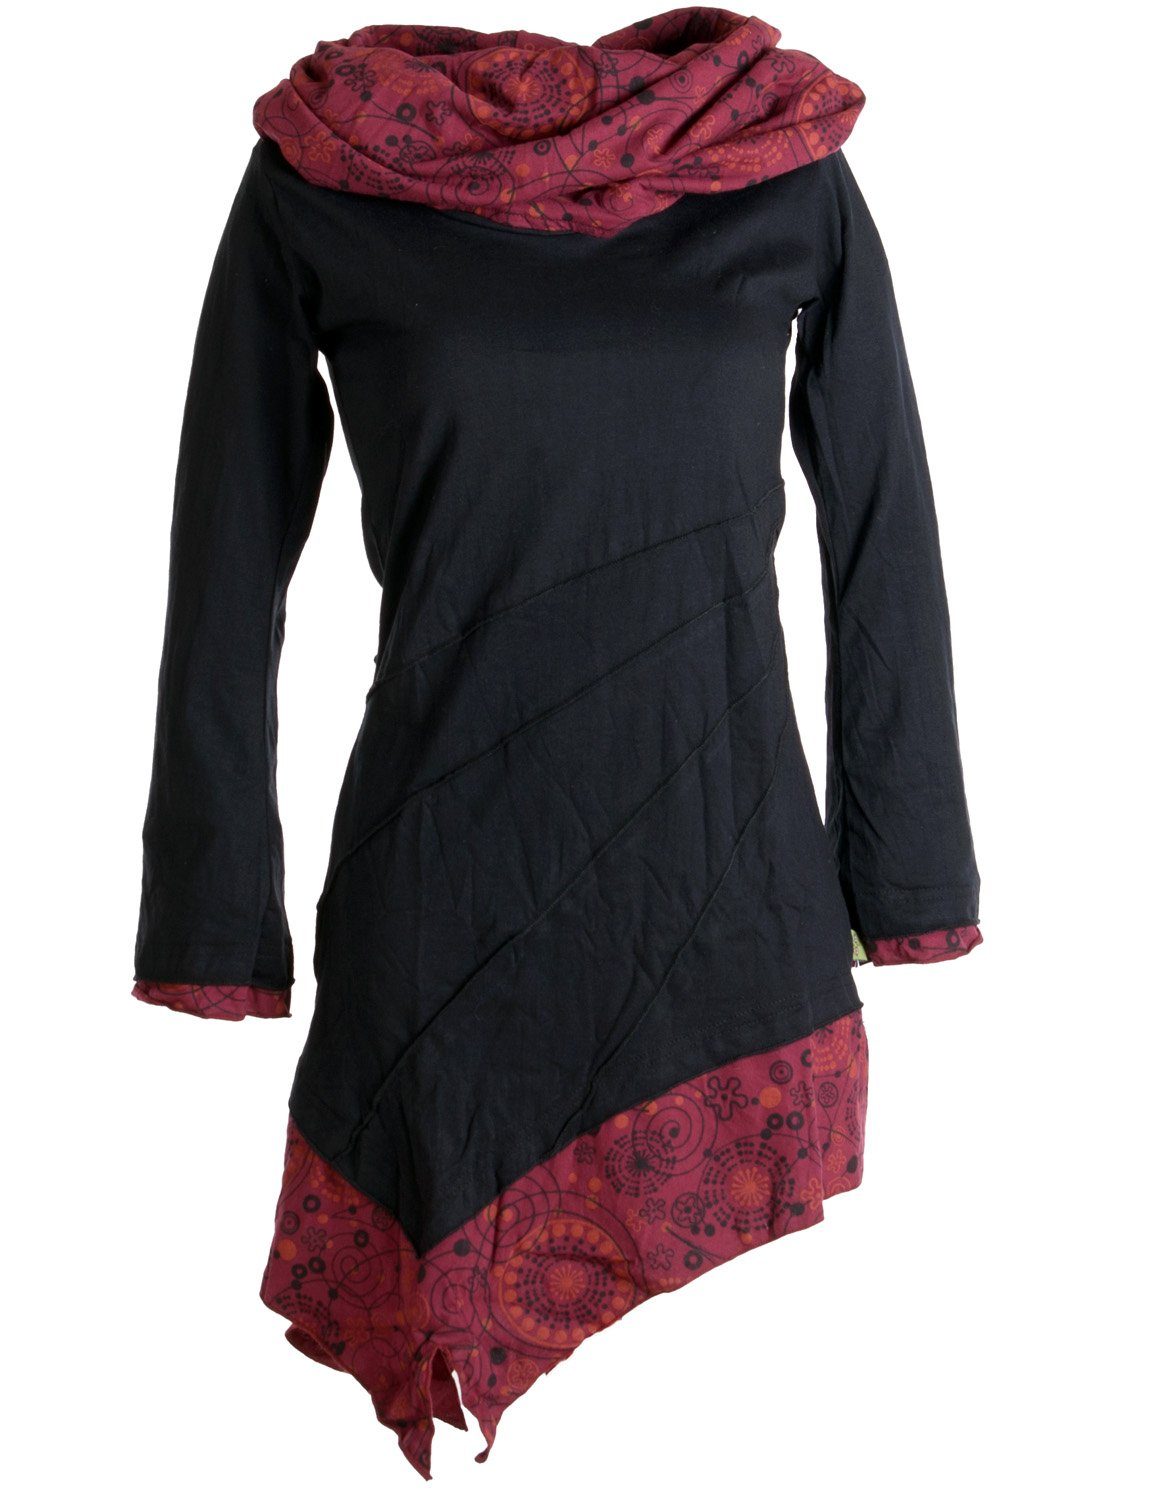 Vishes Jerseykleid Asymmetrisches Kleid aus Baumwolle mit Schalkragen Ethno, Hippie, Goa, Boho Style schwarz-rot